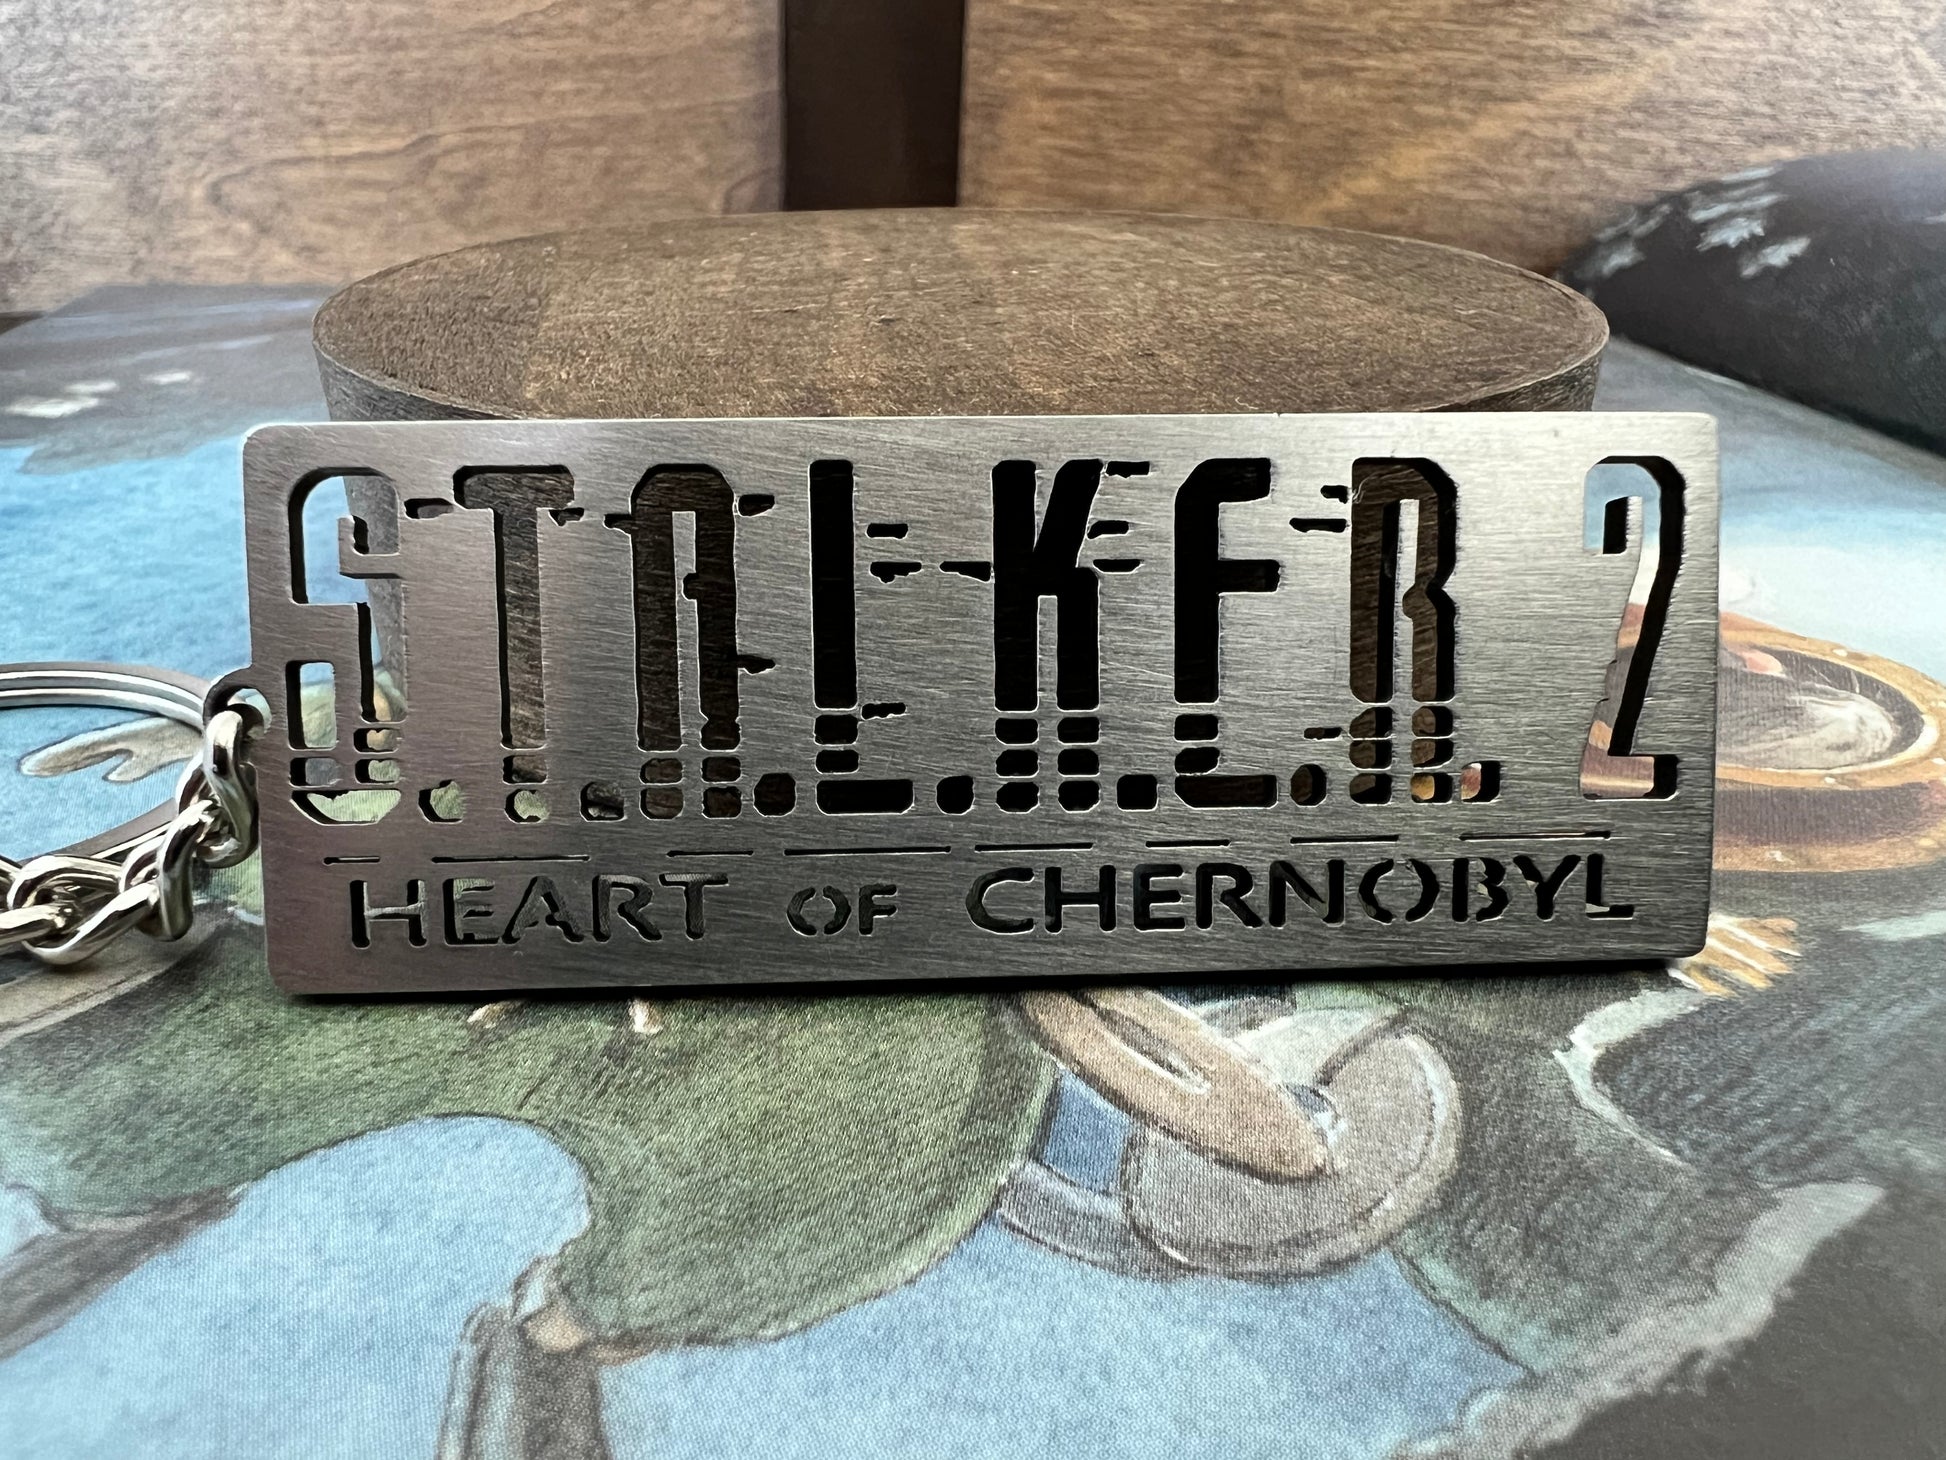 Stalker 2 Heart Of Chernobyl Logo, S.T.A.L.K.E.R 2, Stainless Steel Keychain